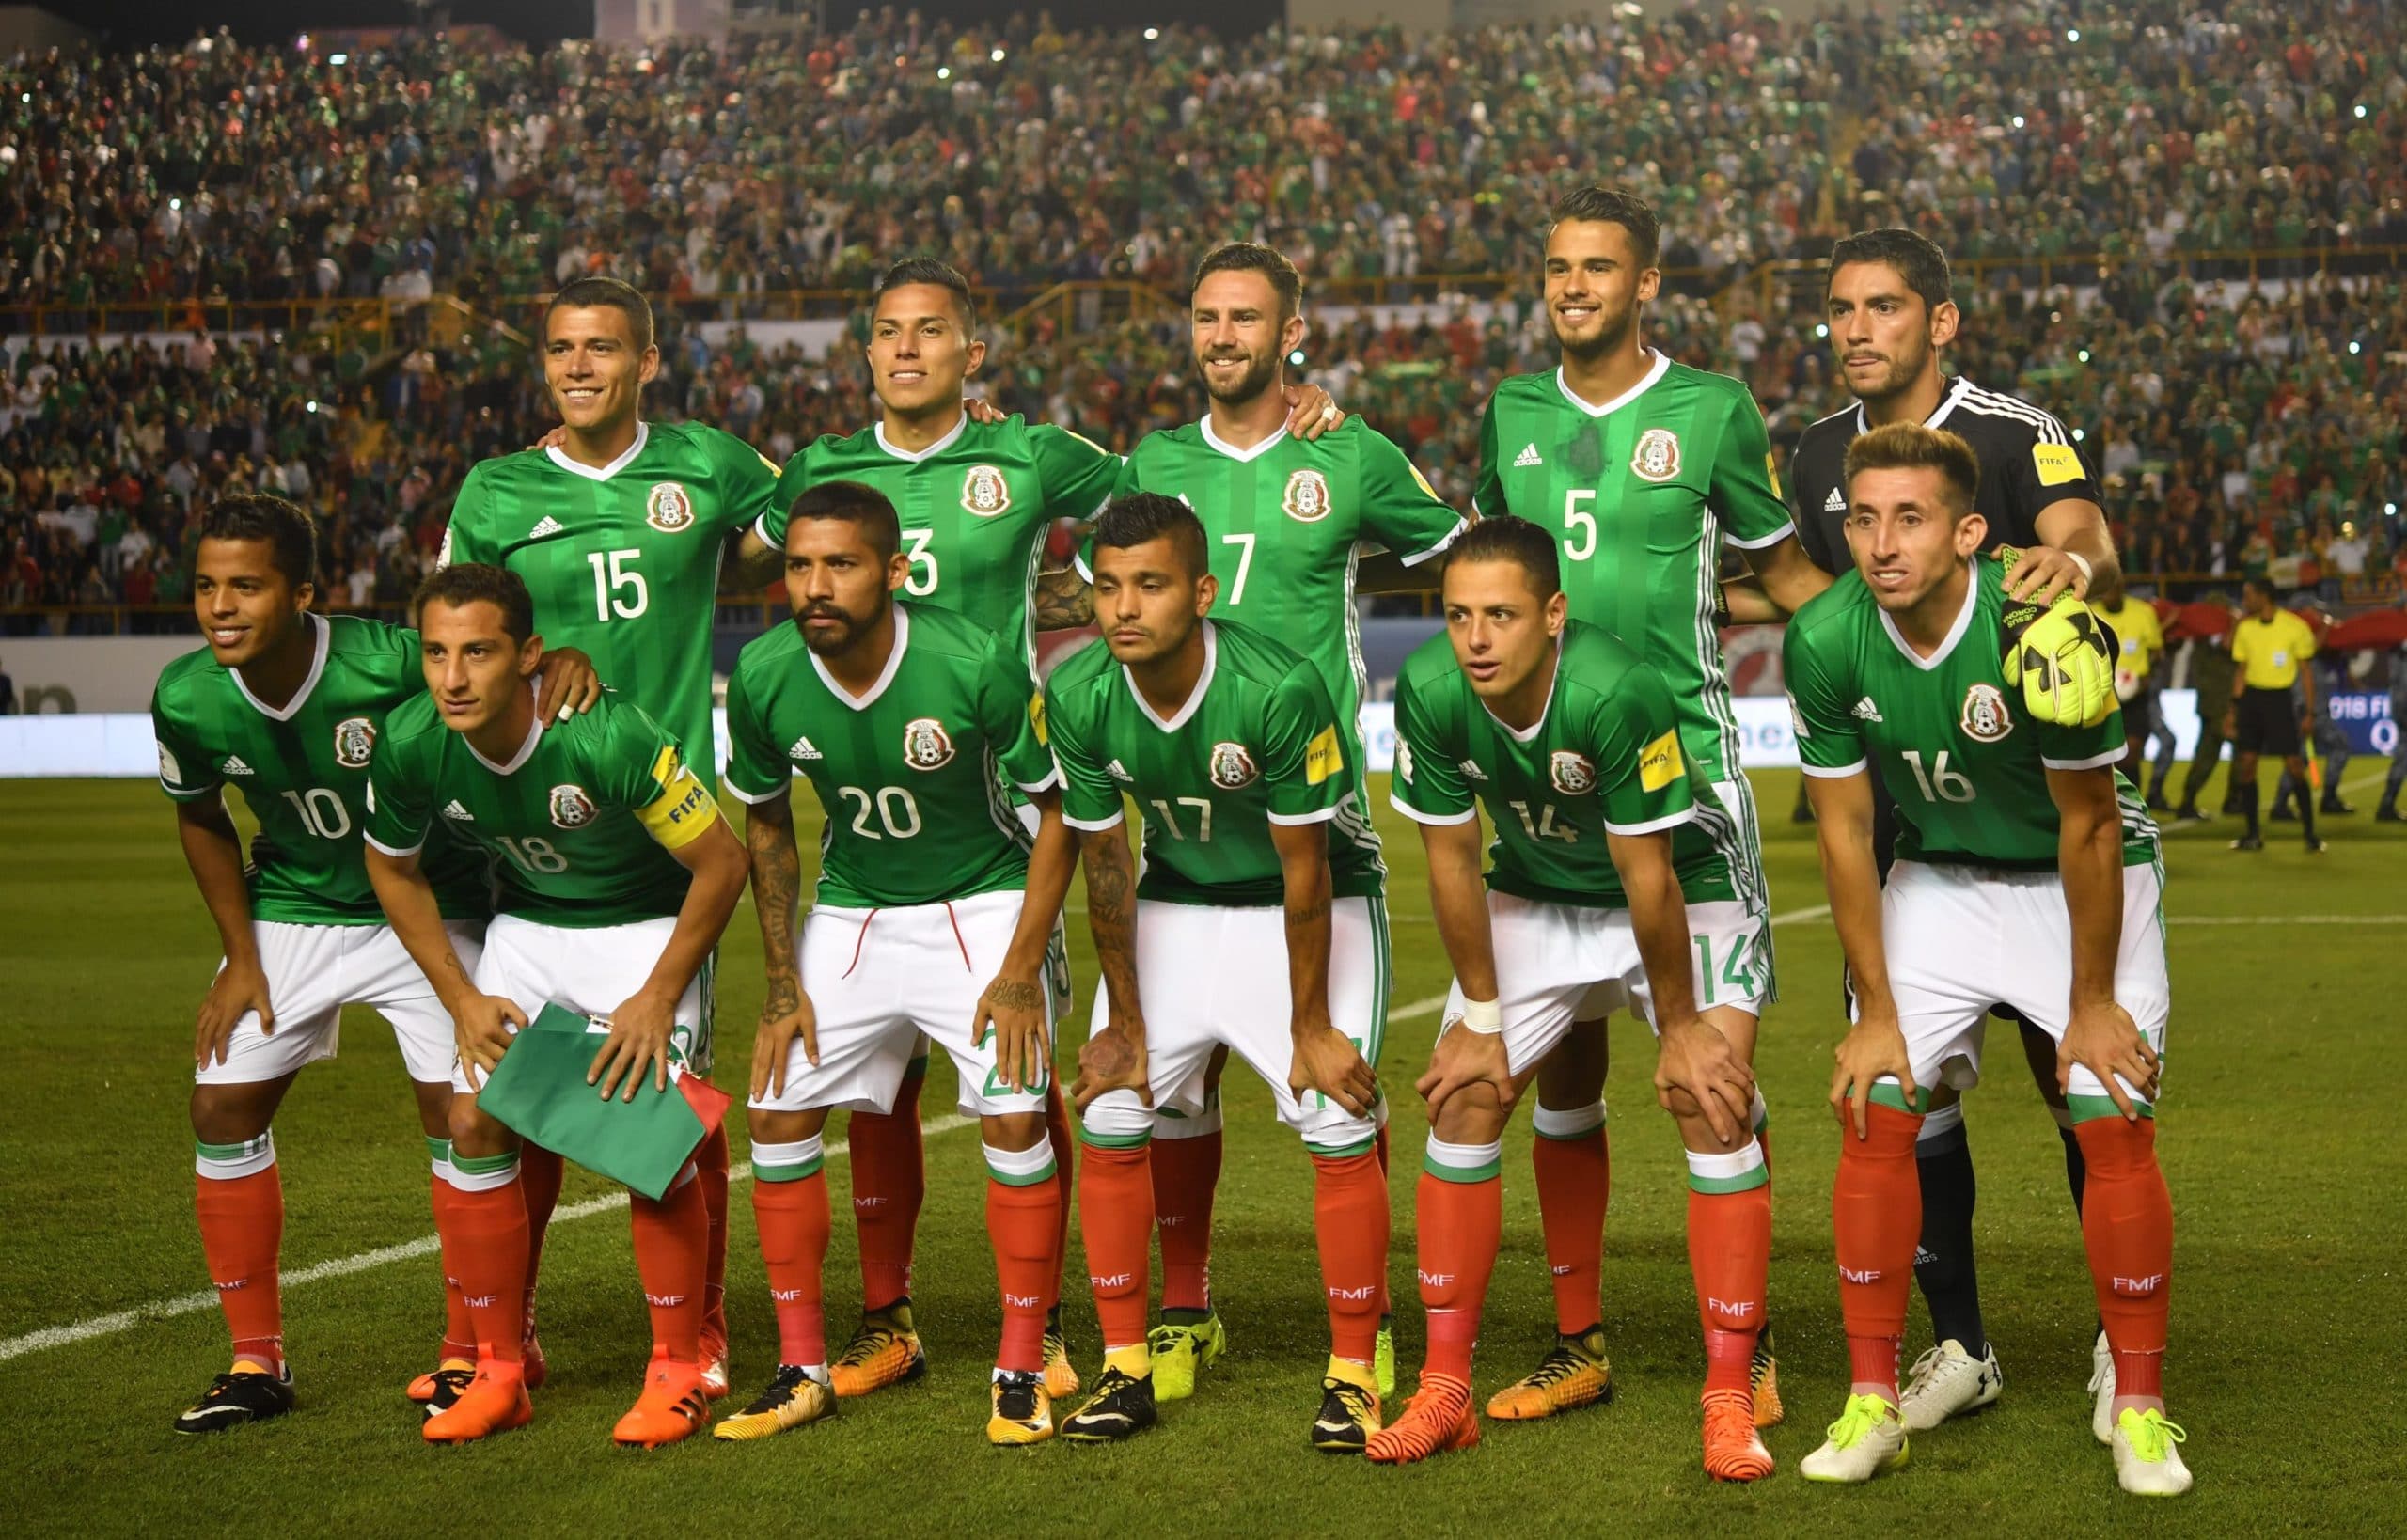 Fußball WM heute Ergebnis: 0:0 Mexiko gegen Polen * TV-Übertragung: Wer überträgt Mexiko gegen Polen?